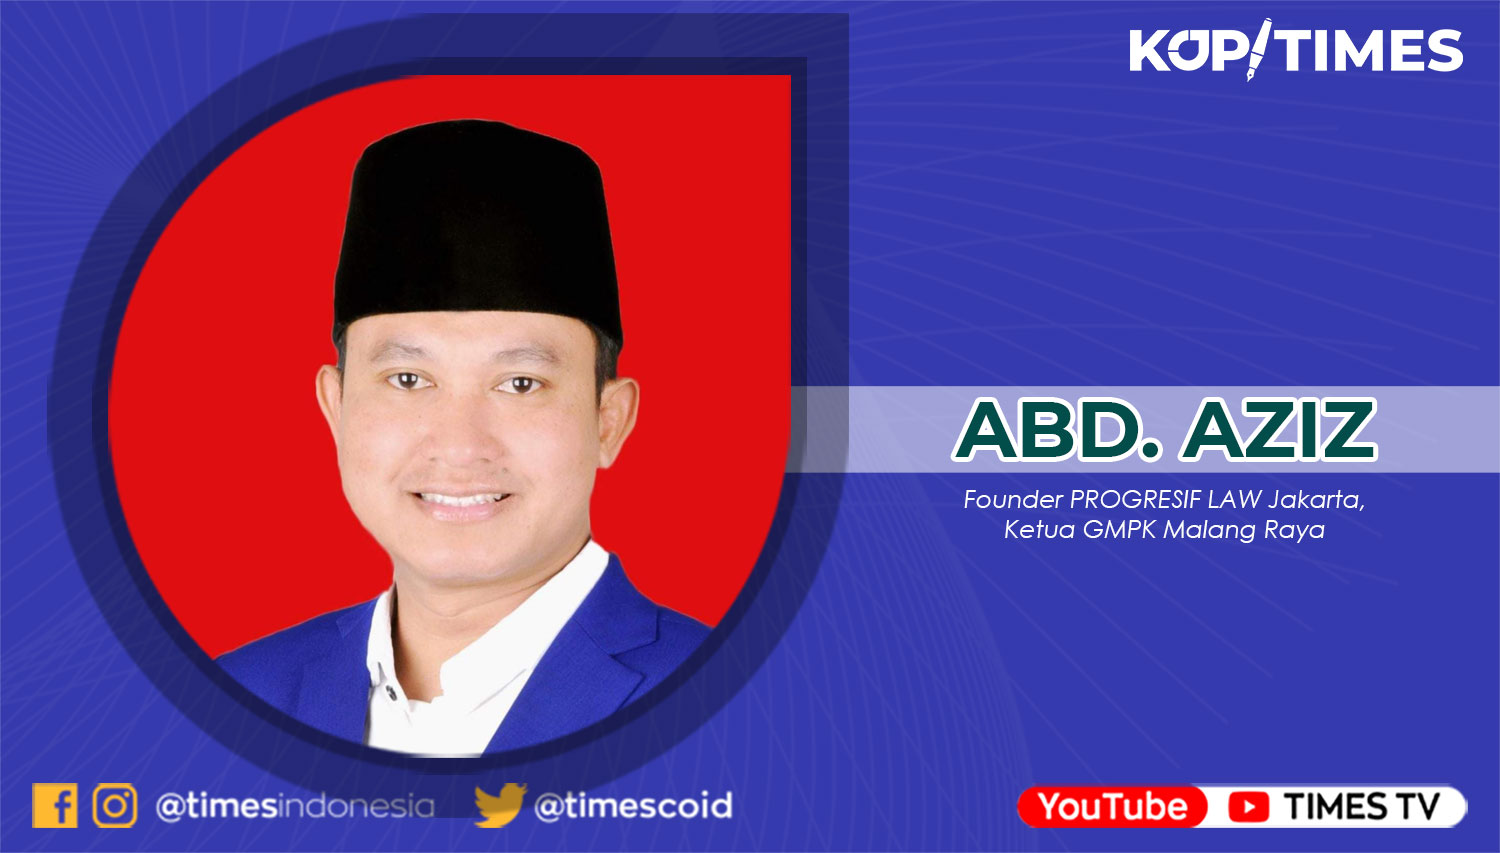 Abd. Aziz, Founder PROGRESIF LAW Jakarta, Ketua Gerakan Masyarakat Perangi Korupsi (GMPK) Malang Raya.